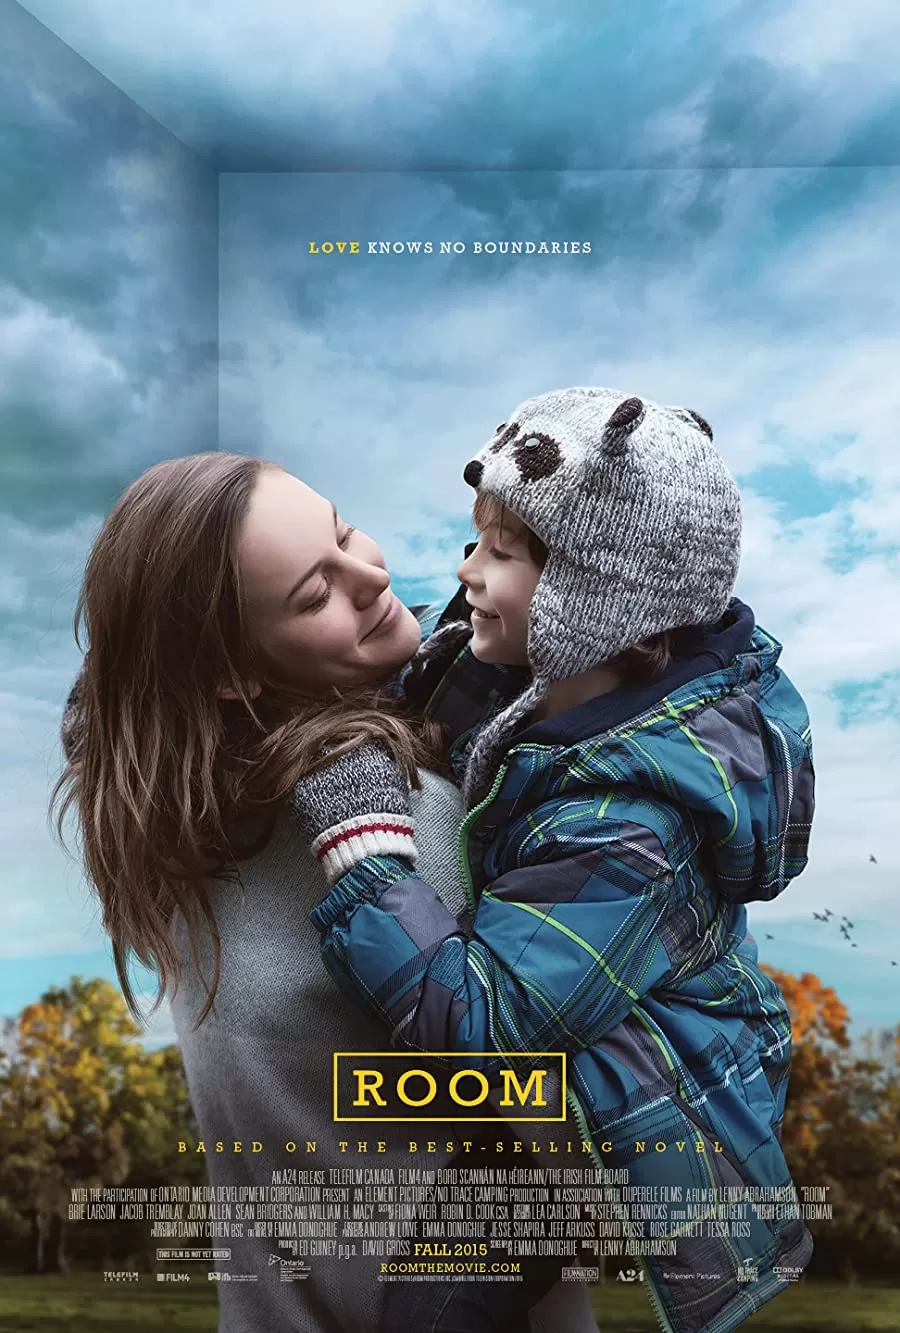 فیلم Room 2015